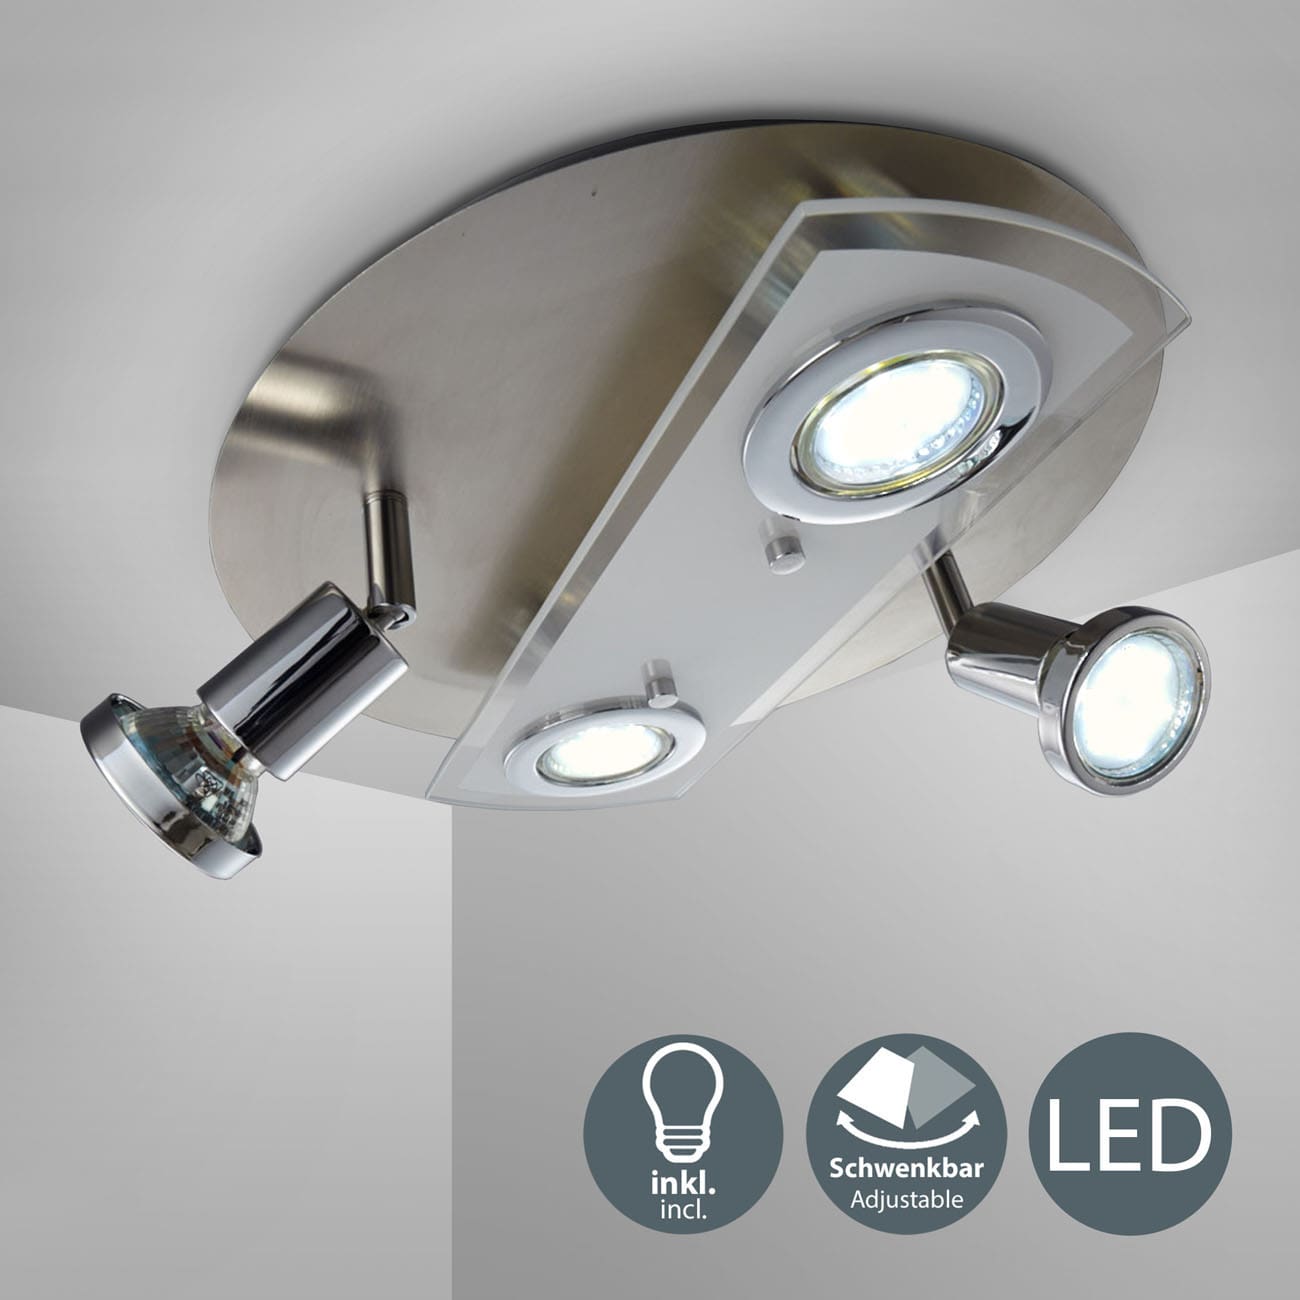 LED Deckenleuchte 29cm - 4-flammig - moderne Deckenlampe 2 Spots schwenkbar Glas Metall GU10 12W 1000lm warmweiß | Matt-Nickel - 3